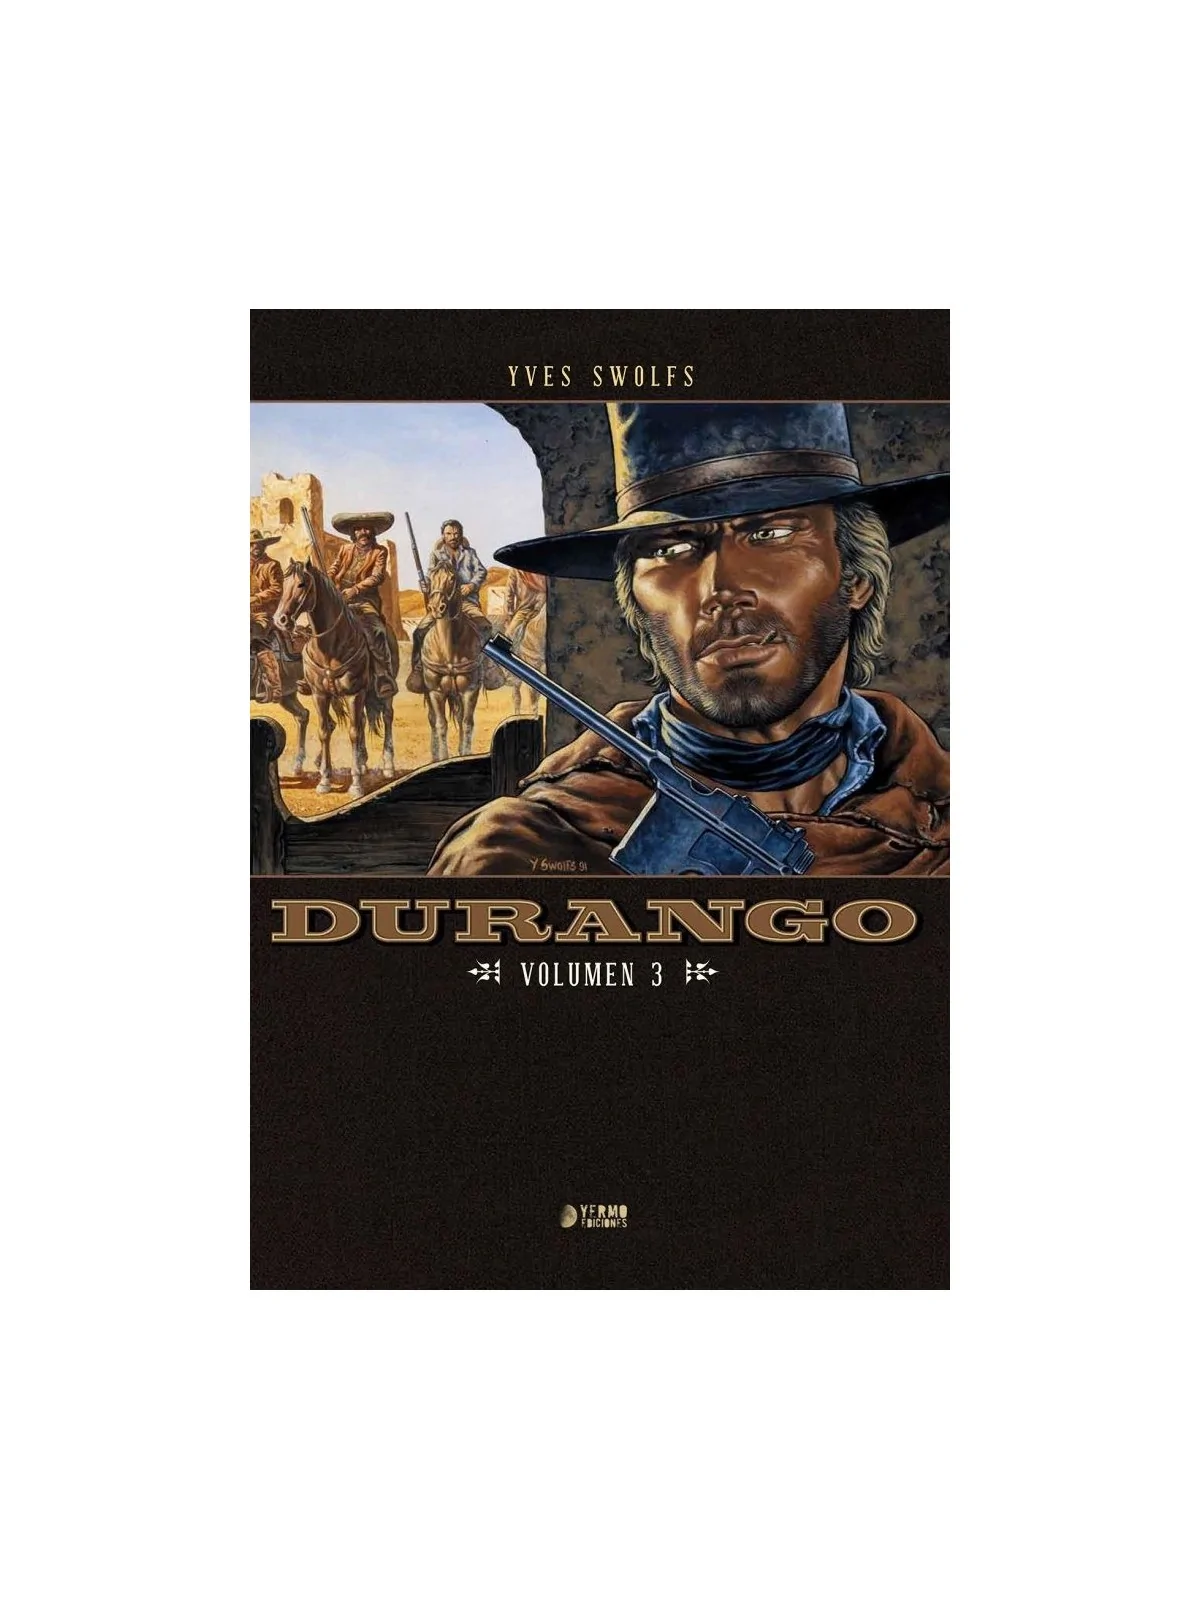 Comprar Durango Vol. 3 barato al mejor precio 38,00 € de Yermo Edicion